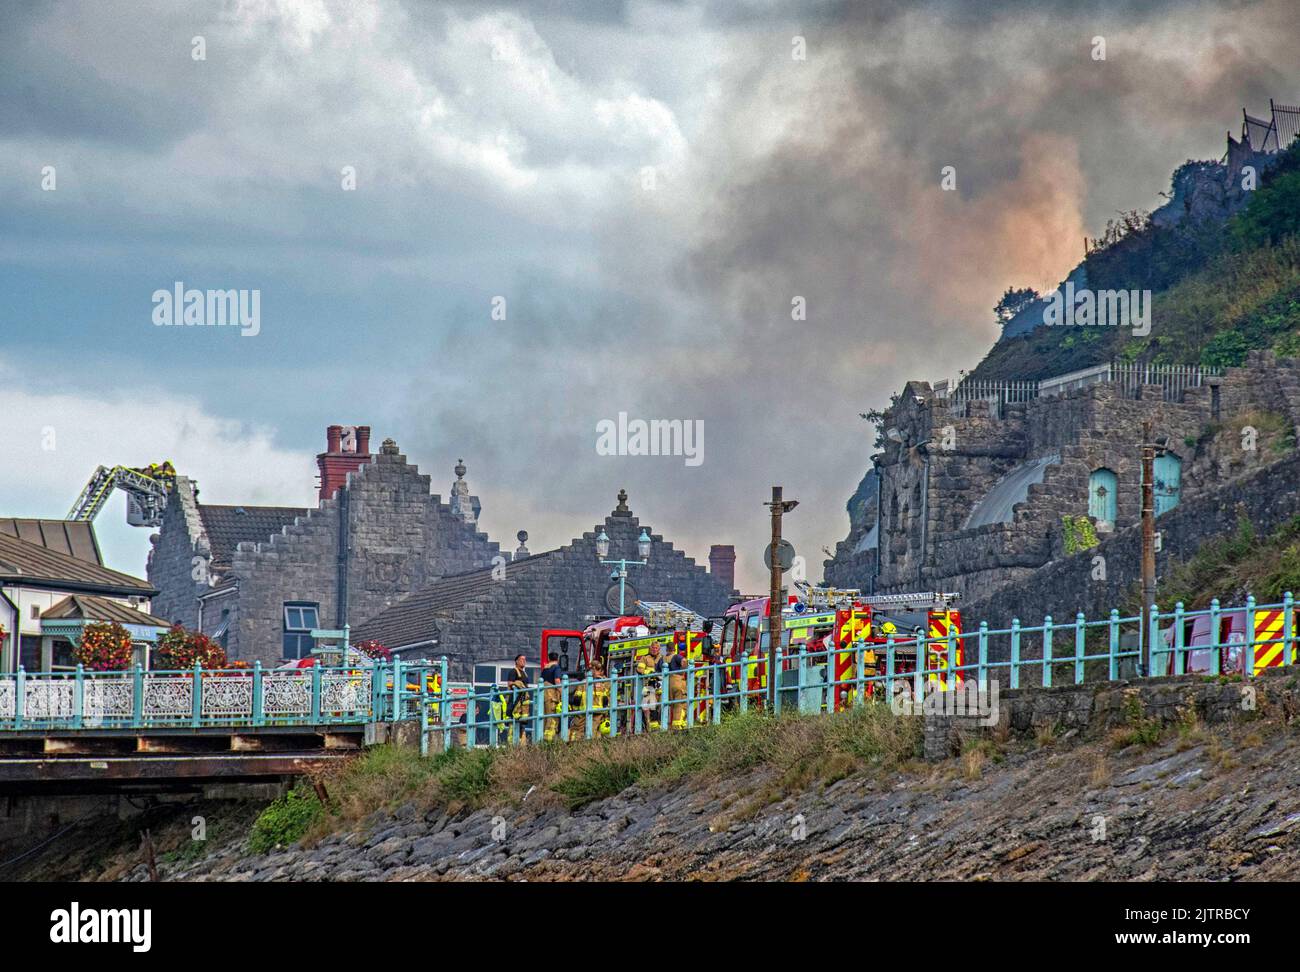 Rauch wabert in den Himmel, als heute Nachmittag im Nachtclub des alten Cinderella am Mumbles Pier in der Nähe von Swansea ein Großbrand ausbrach. Stockfoto